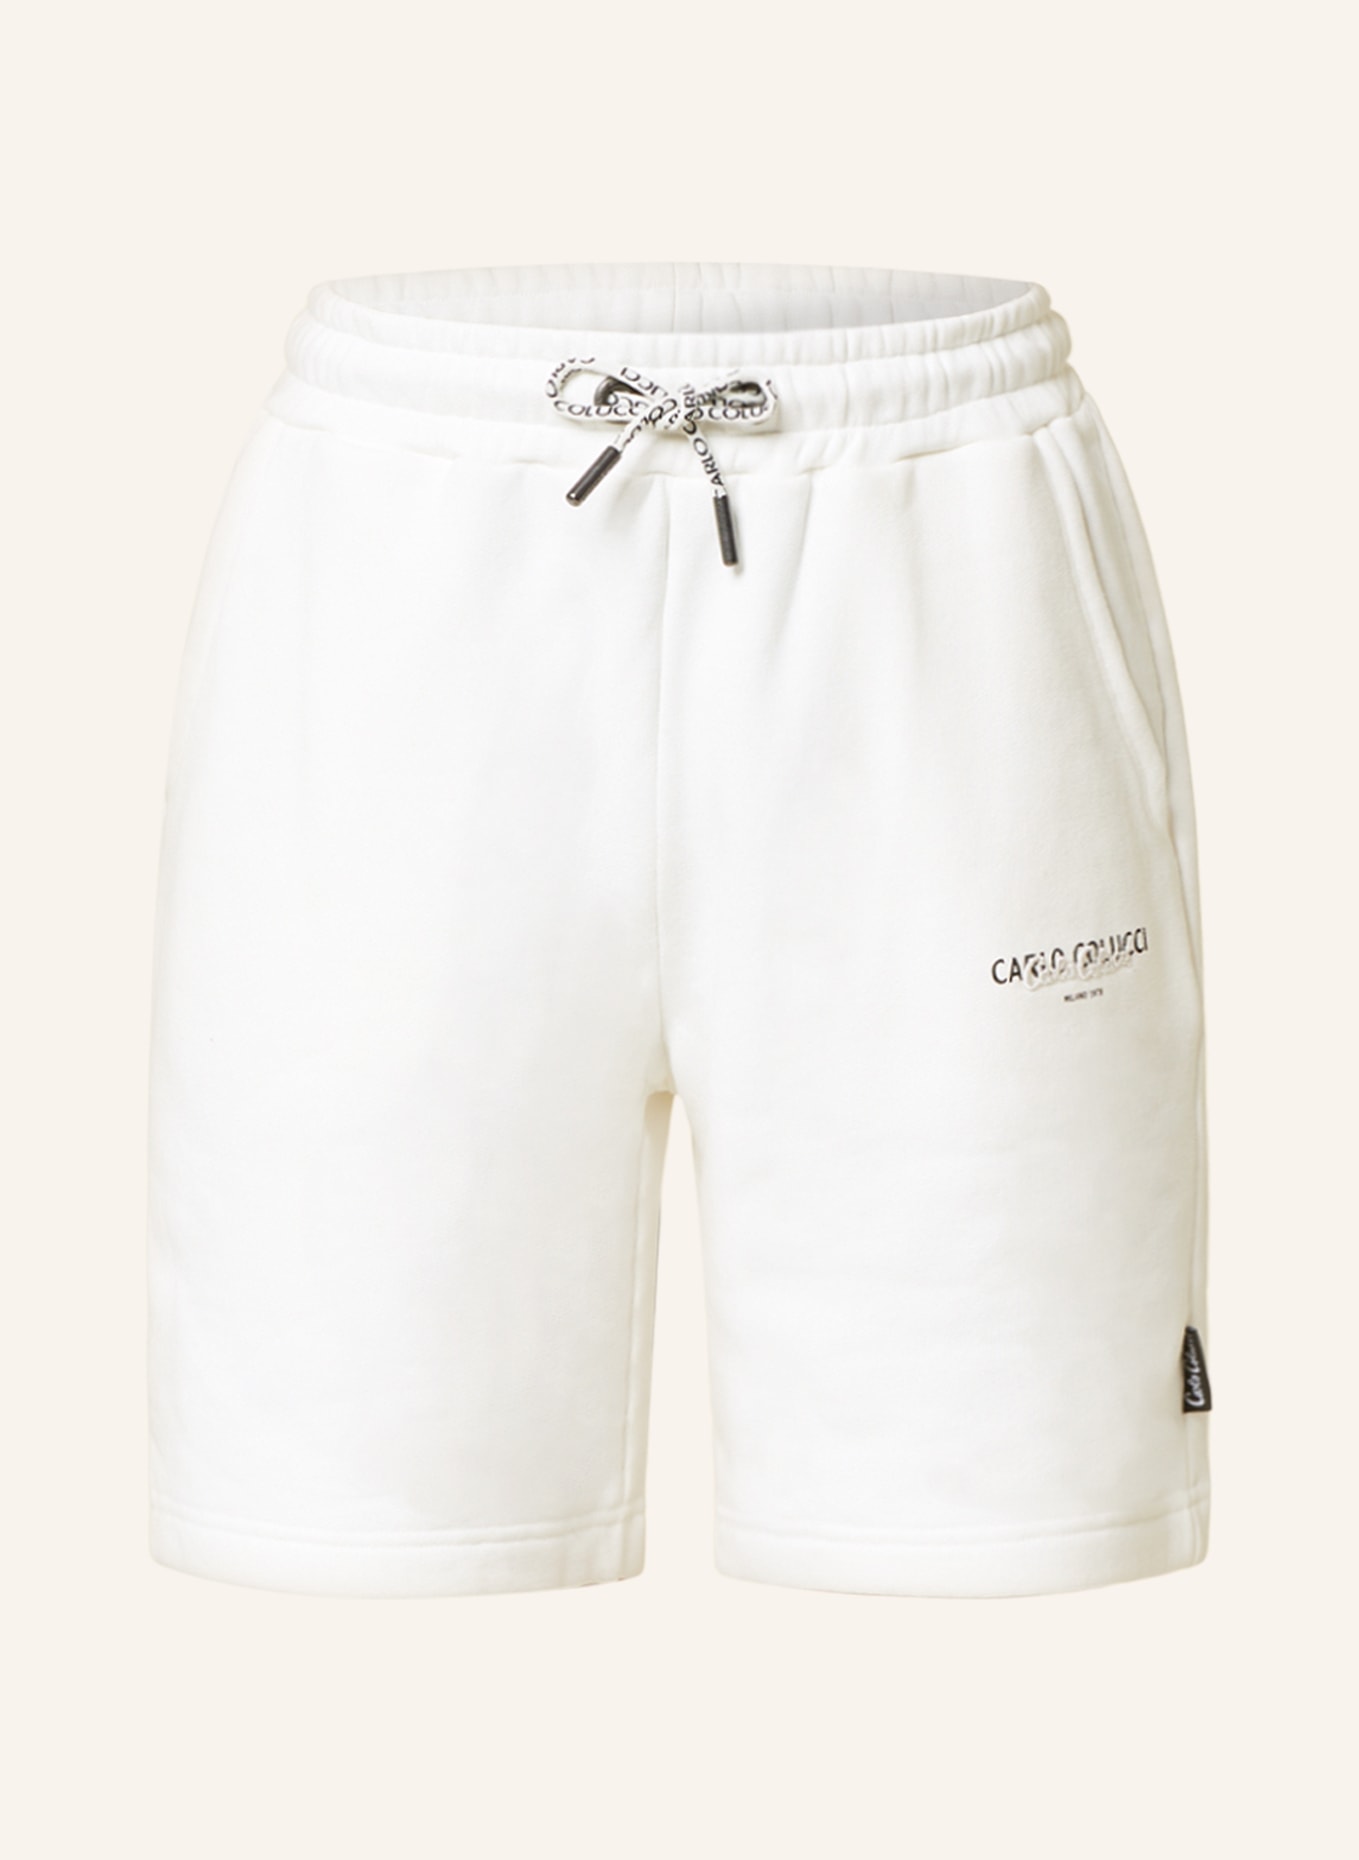 CARLO COLUCCI Sweat shorts, Color: CREAM (Image 1)